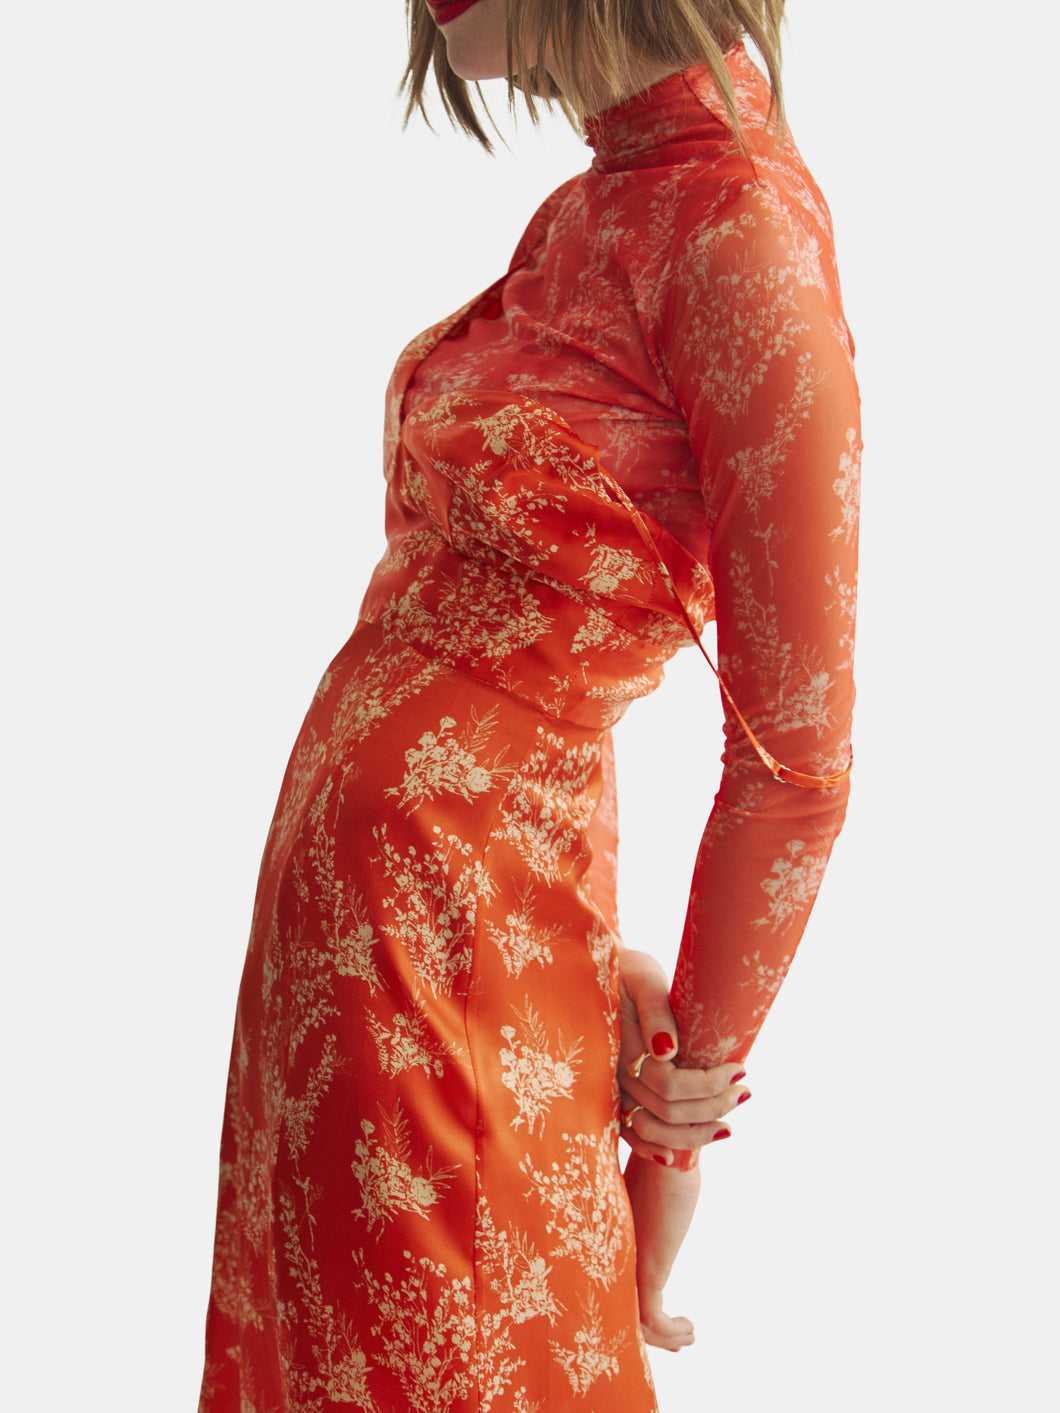 Apéro Dress - With Slit